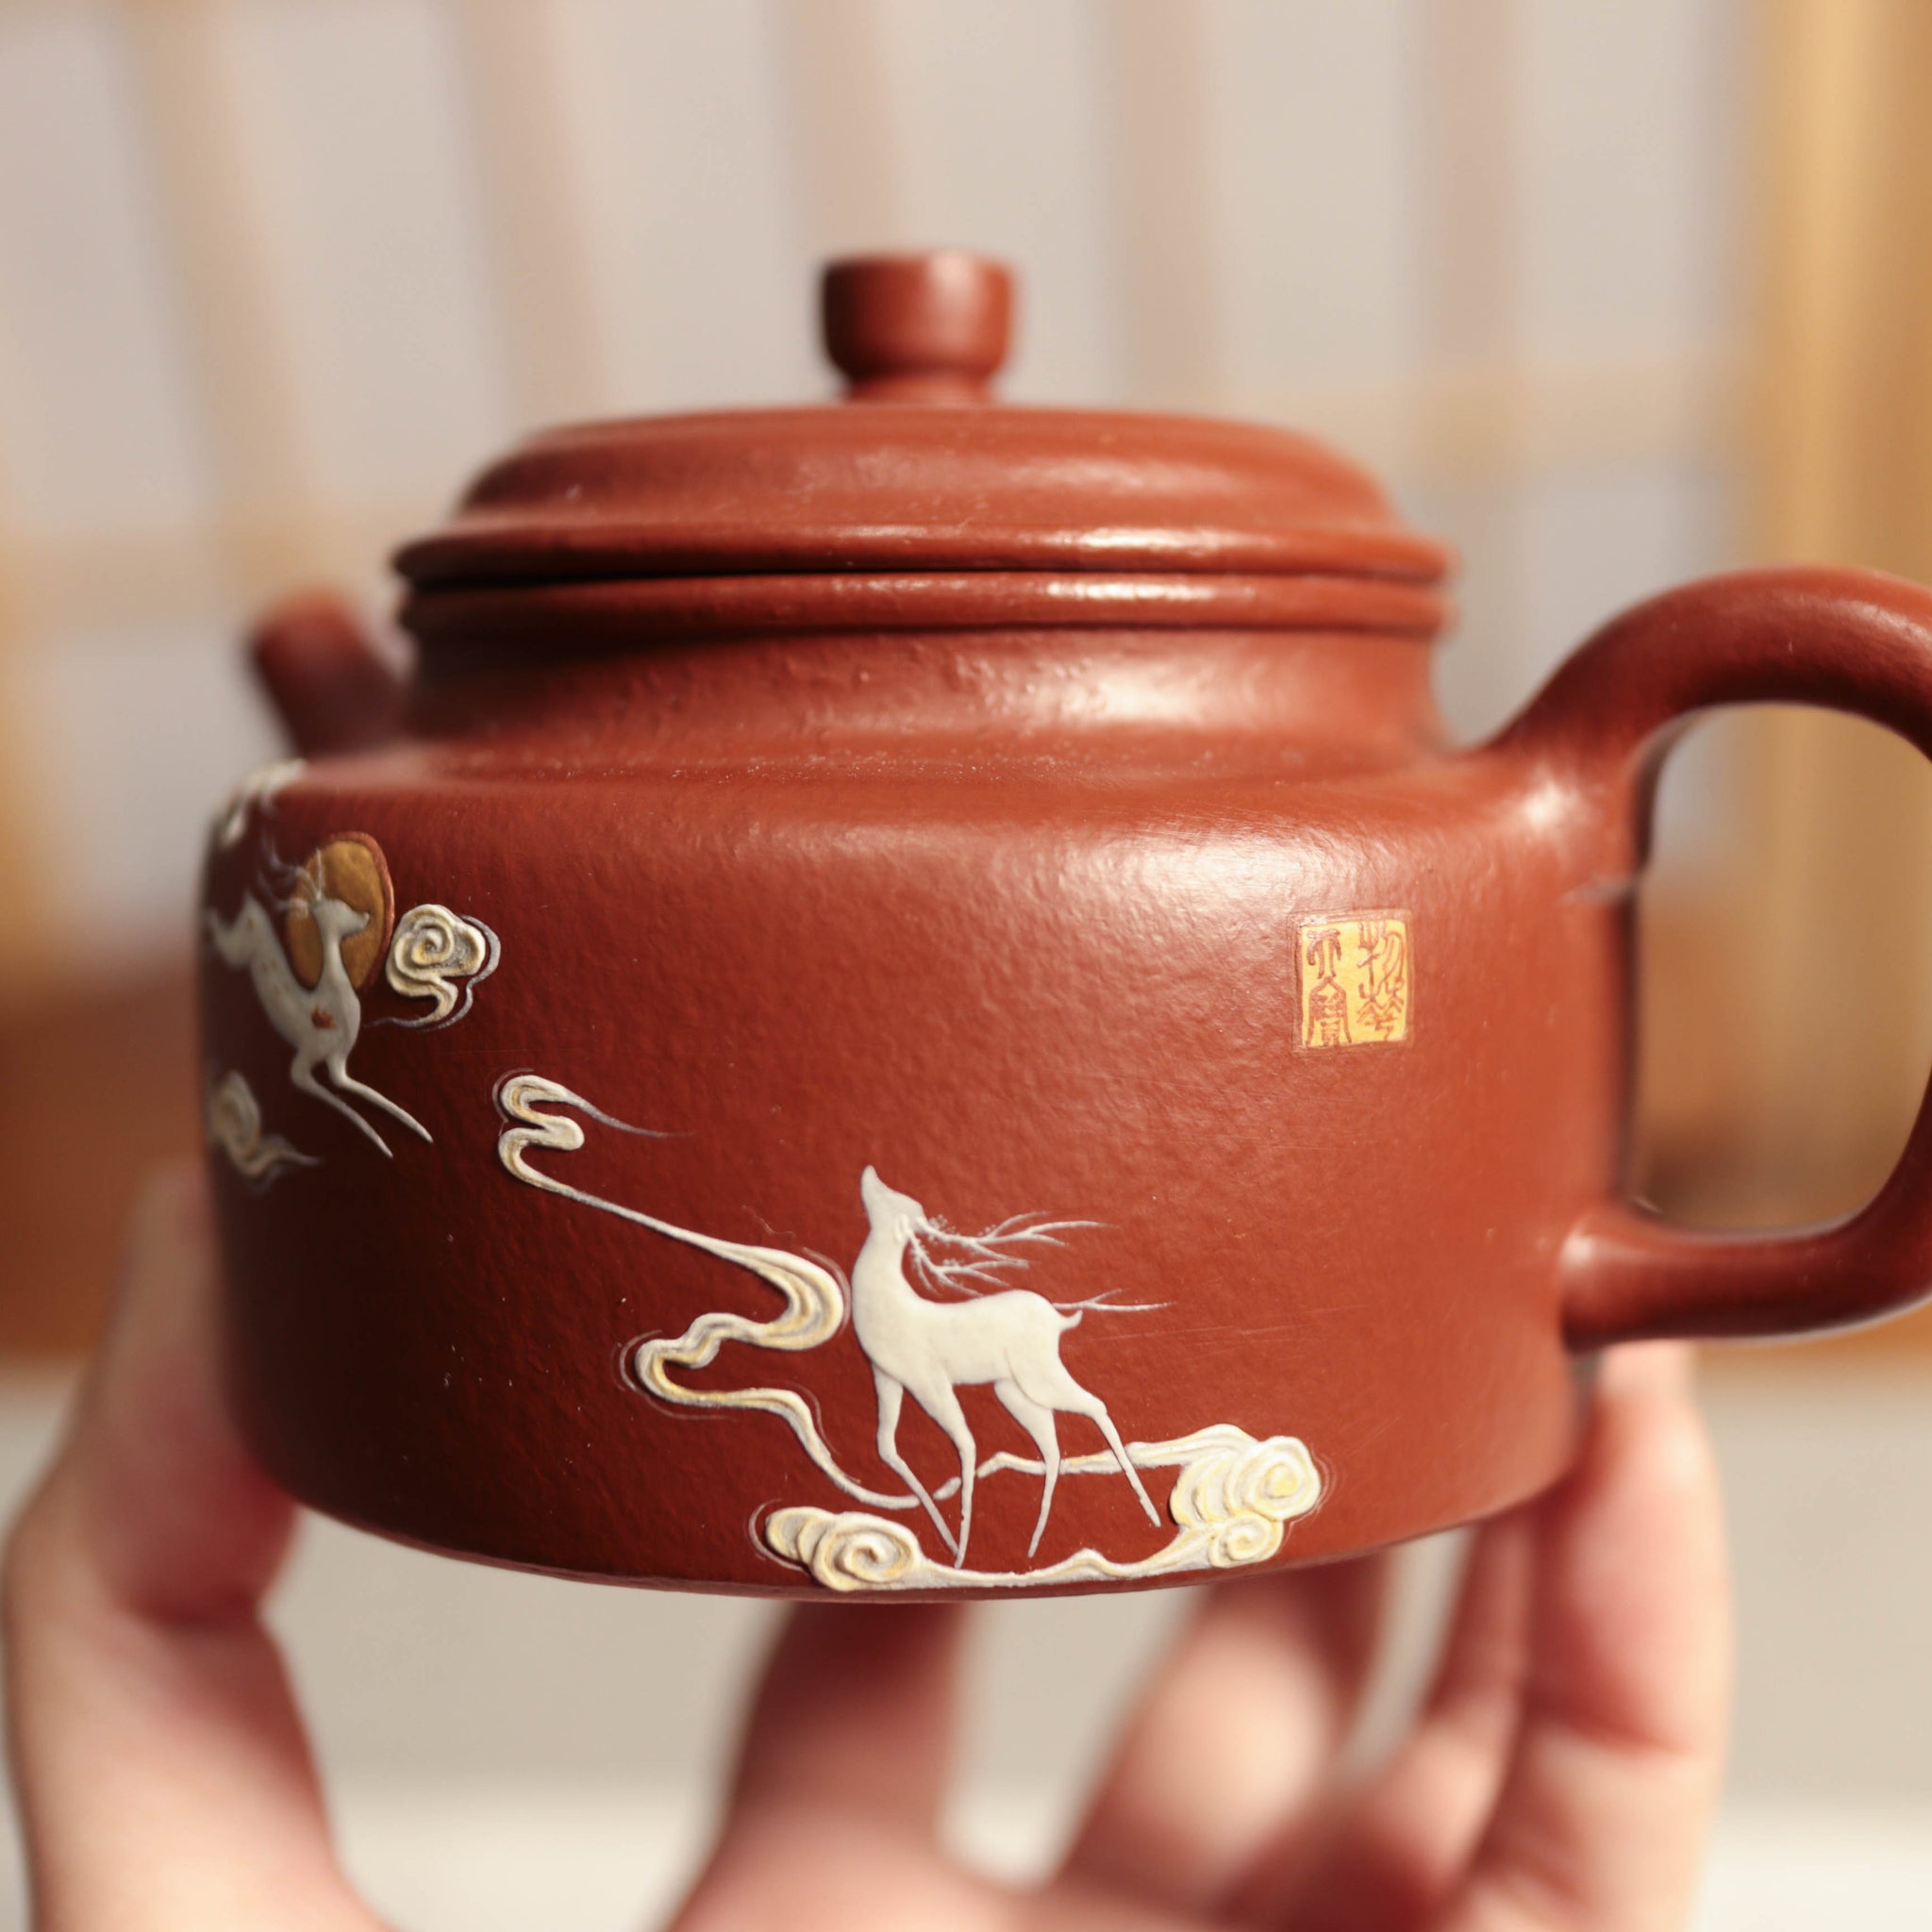 【德鐘】朱泥大紅袍泥繪紫砂茶壺